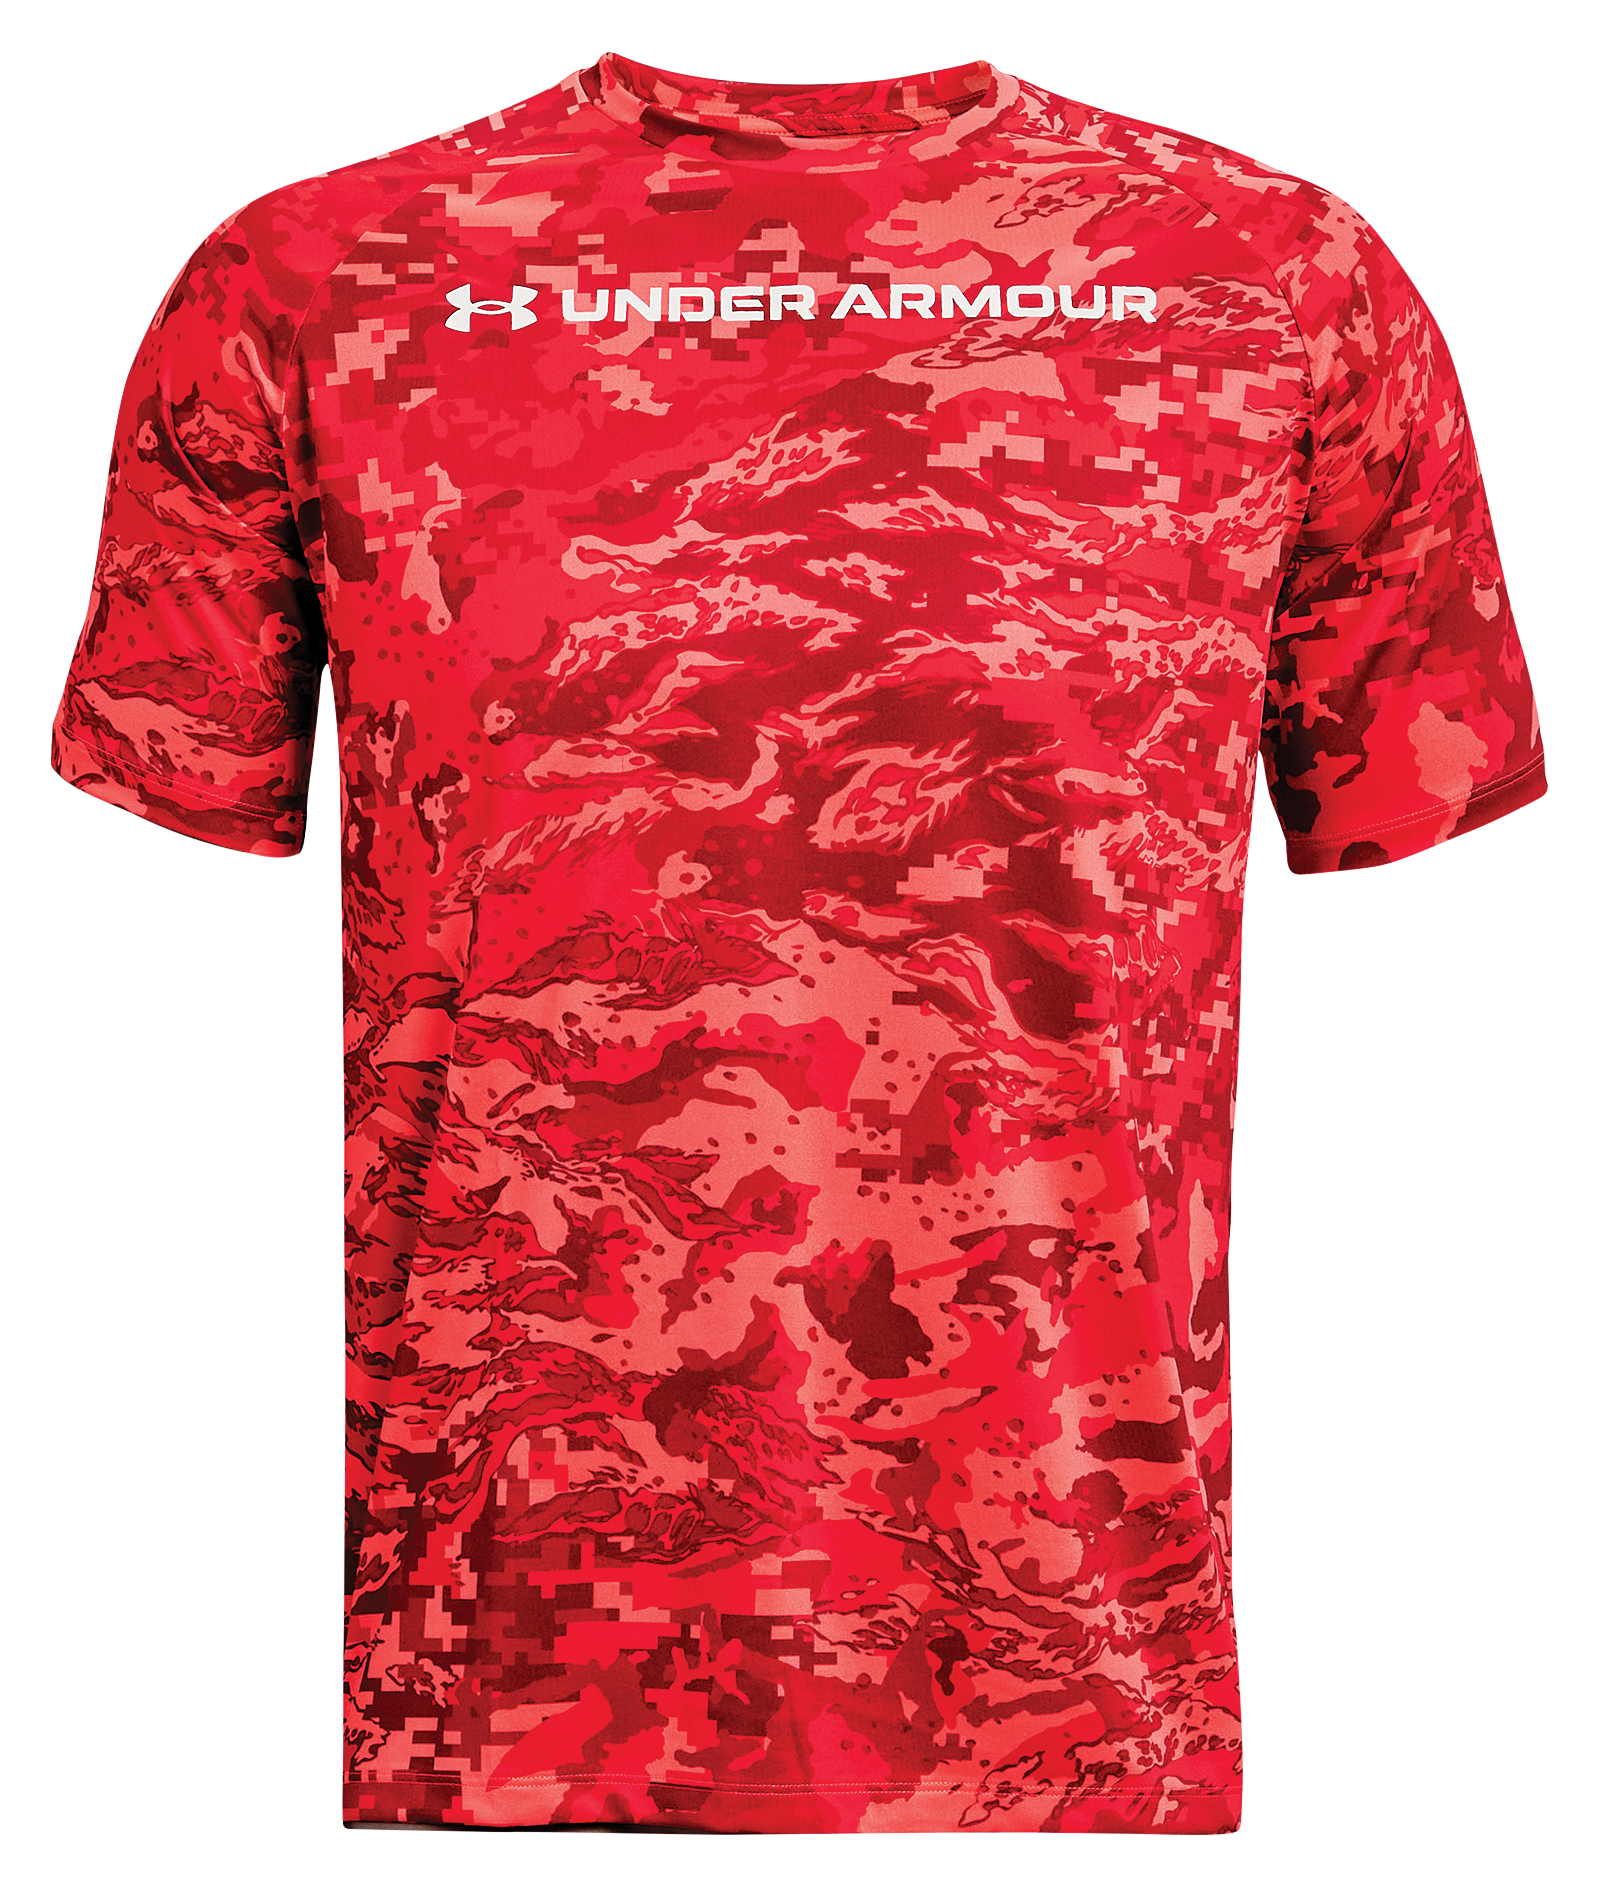 Under Armour UA Tech ABC Camo Short-Sleeve T-Shirt for Men - Venom Red/White - 3XL